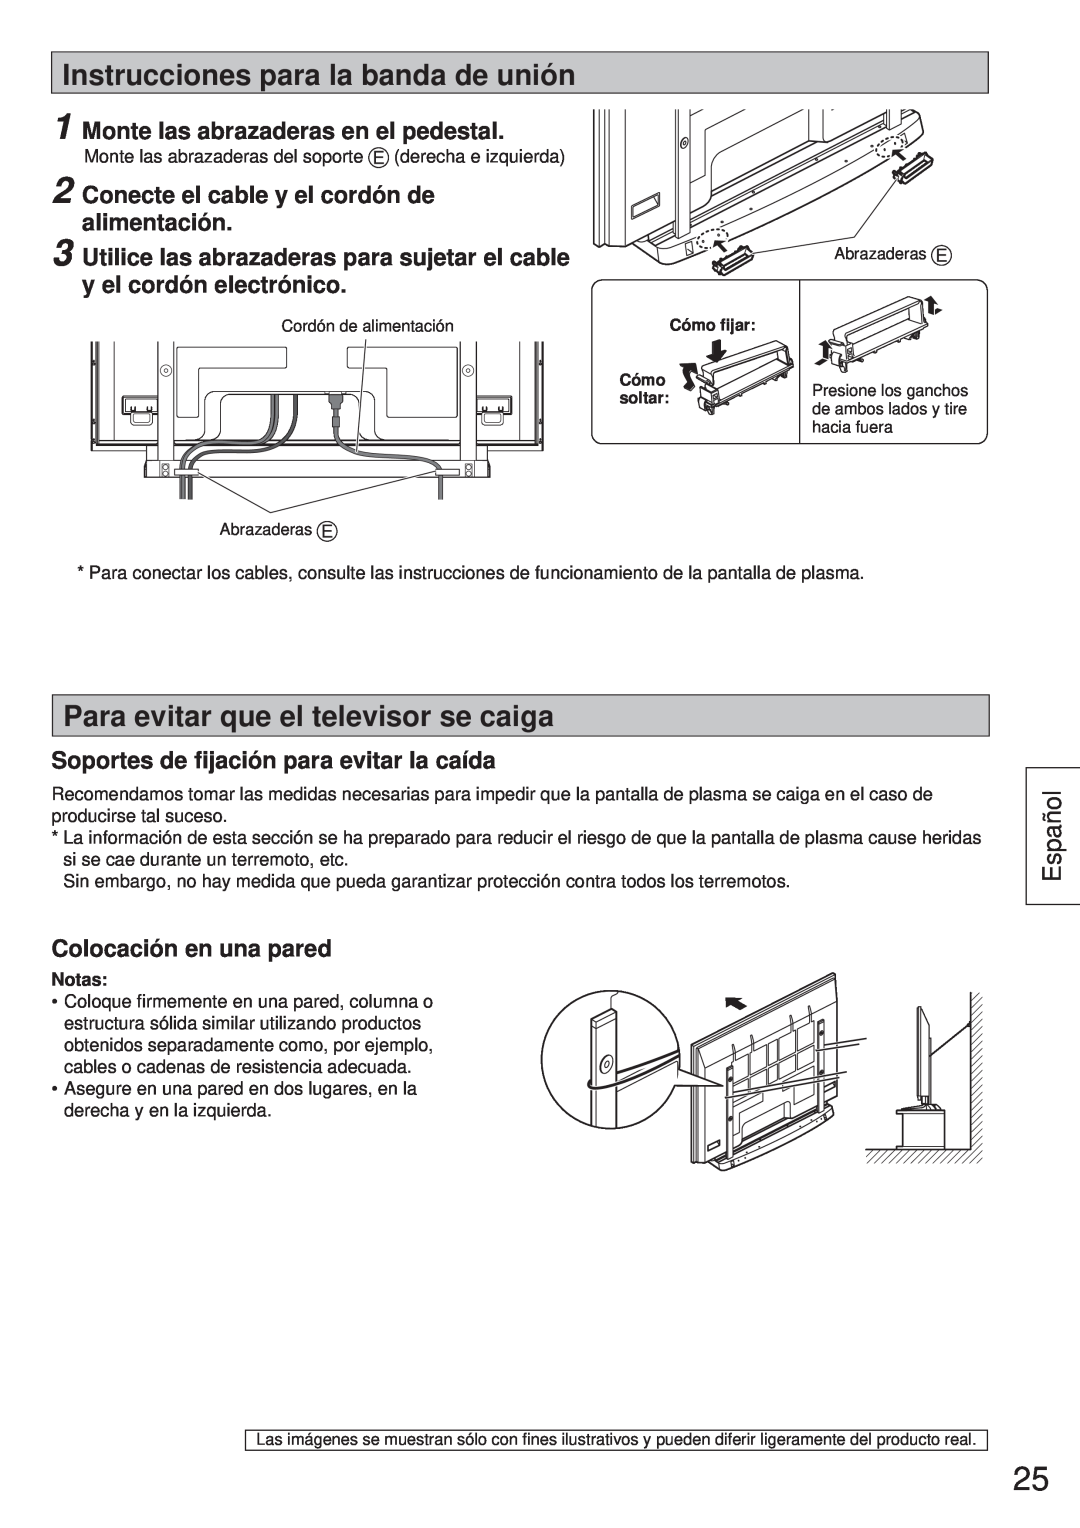 Panasonic TY-ST65VX100 Instrucciones para la banda de unión, Para evitar que el televisor se caiga, Español 